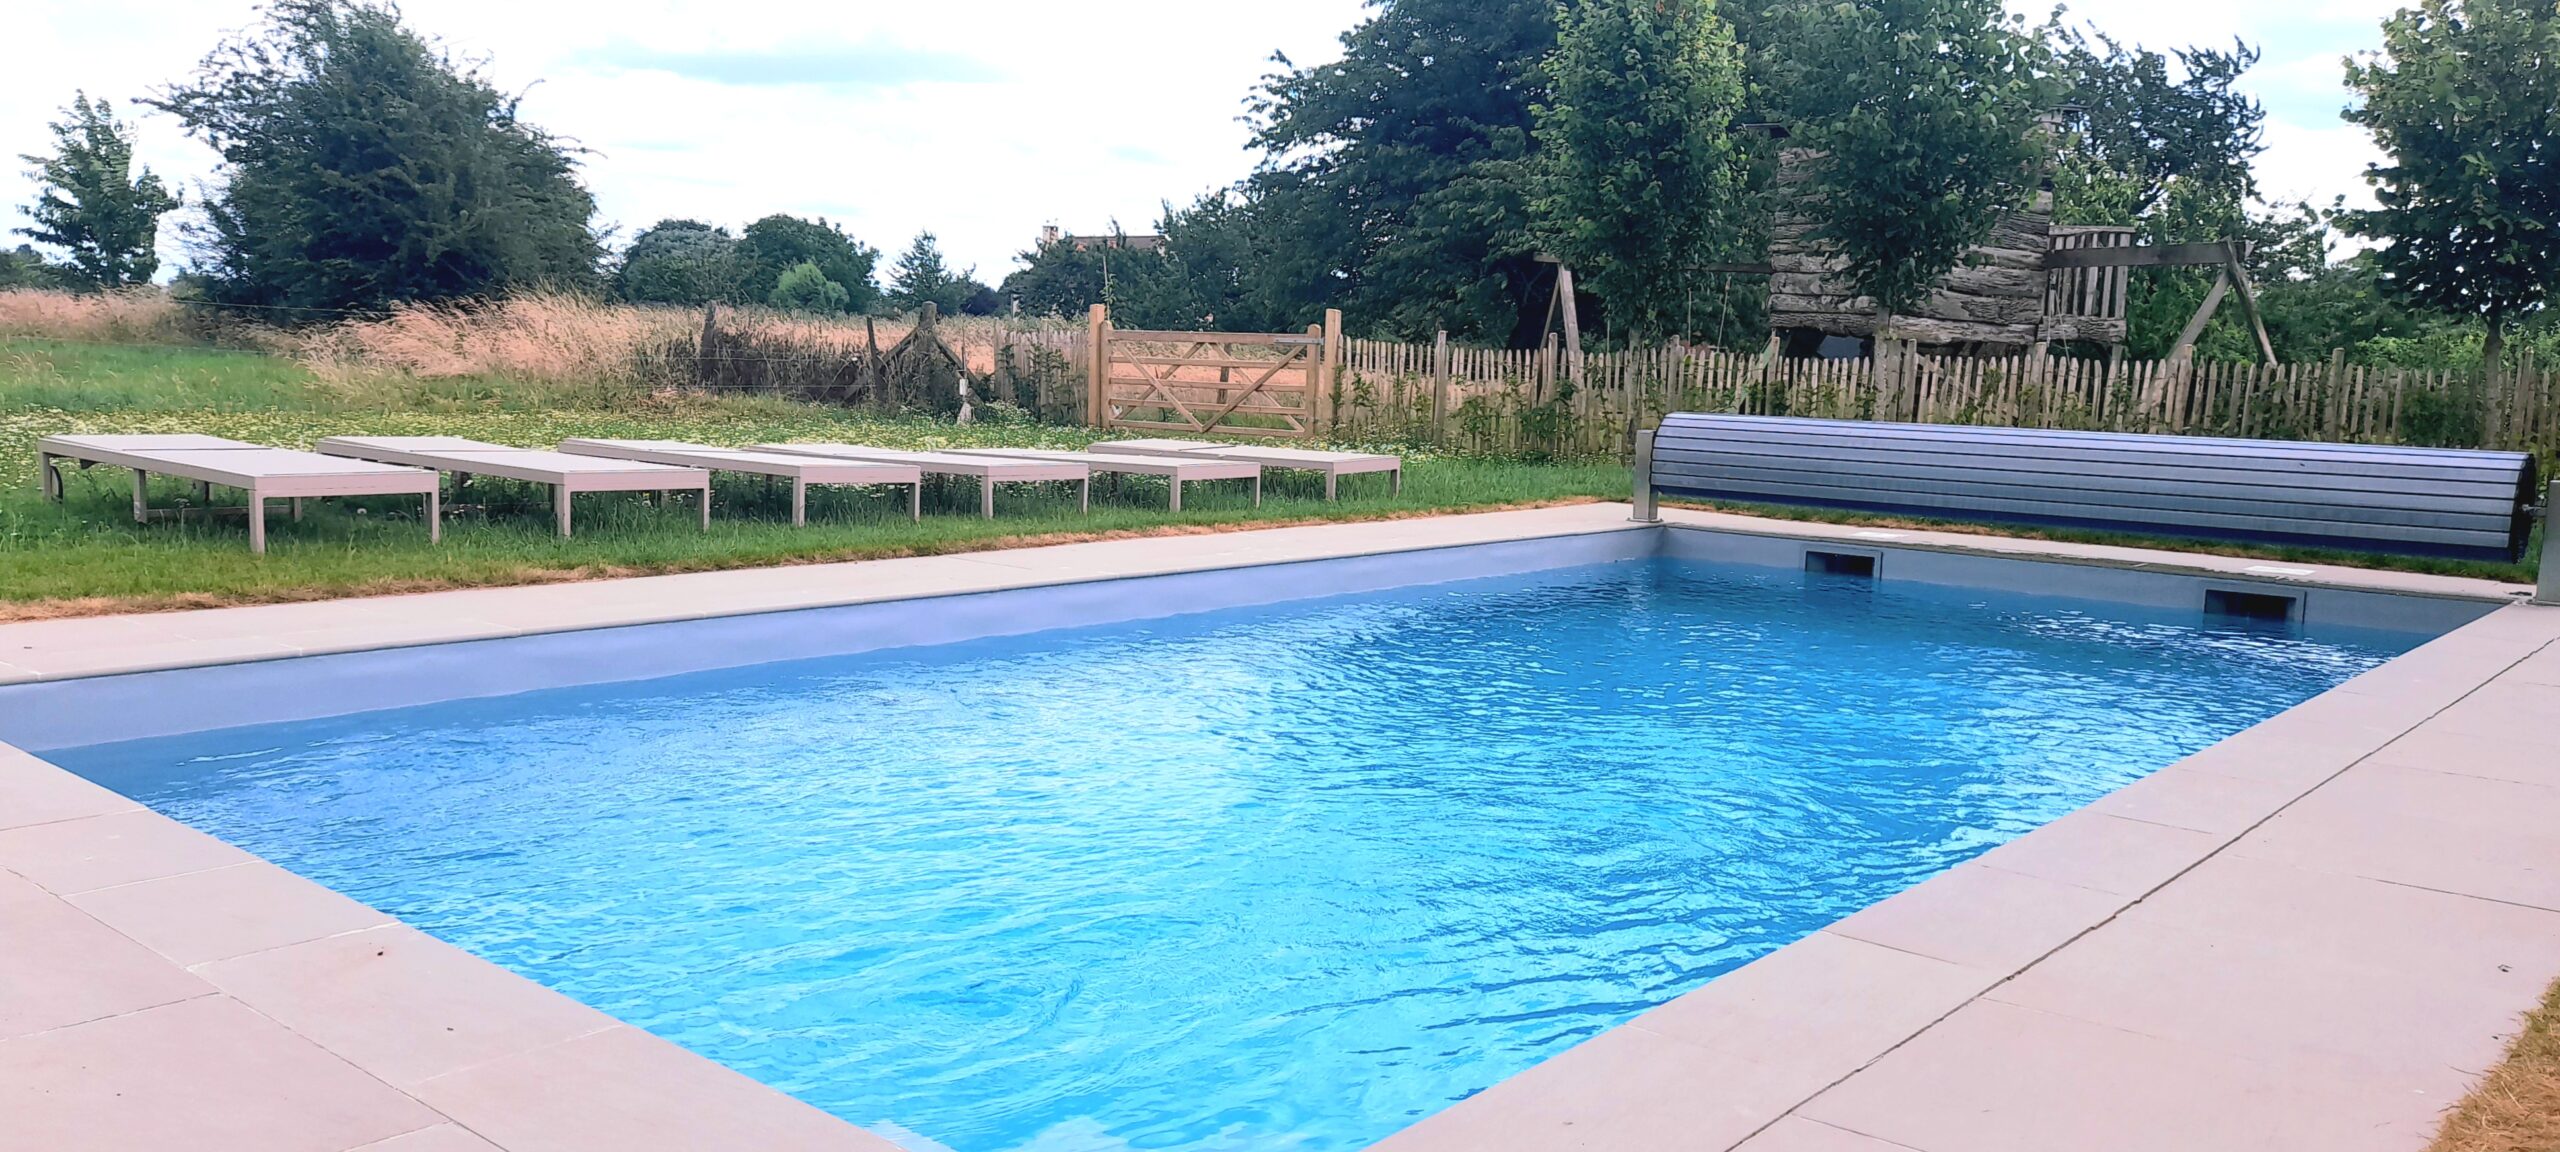 Gites et maisons de vacances à louer à Namur La piscine de la Cense de Baudecet 